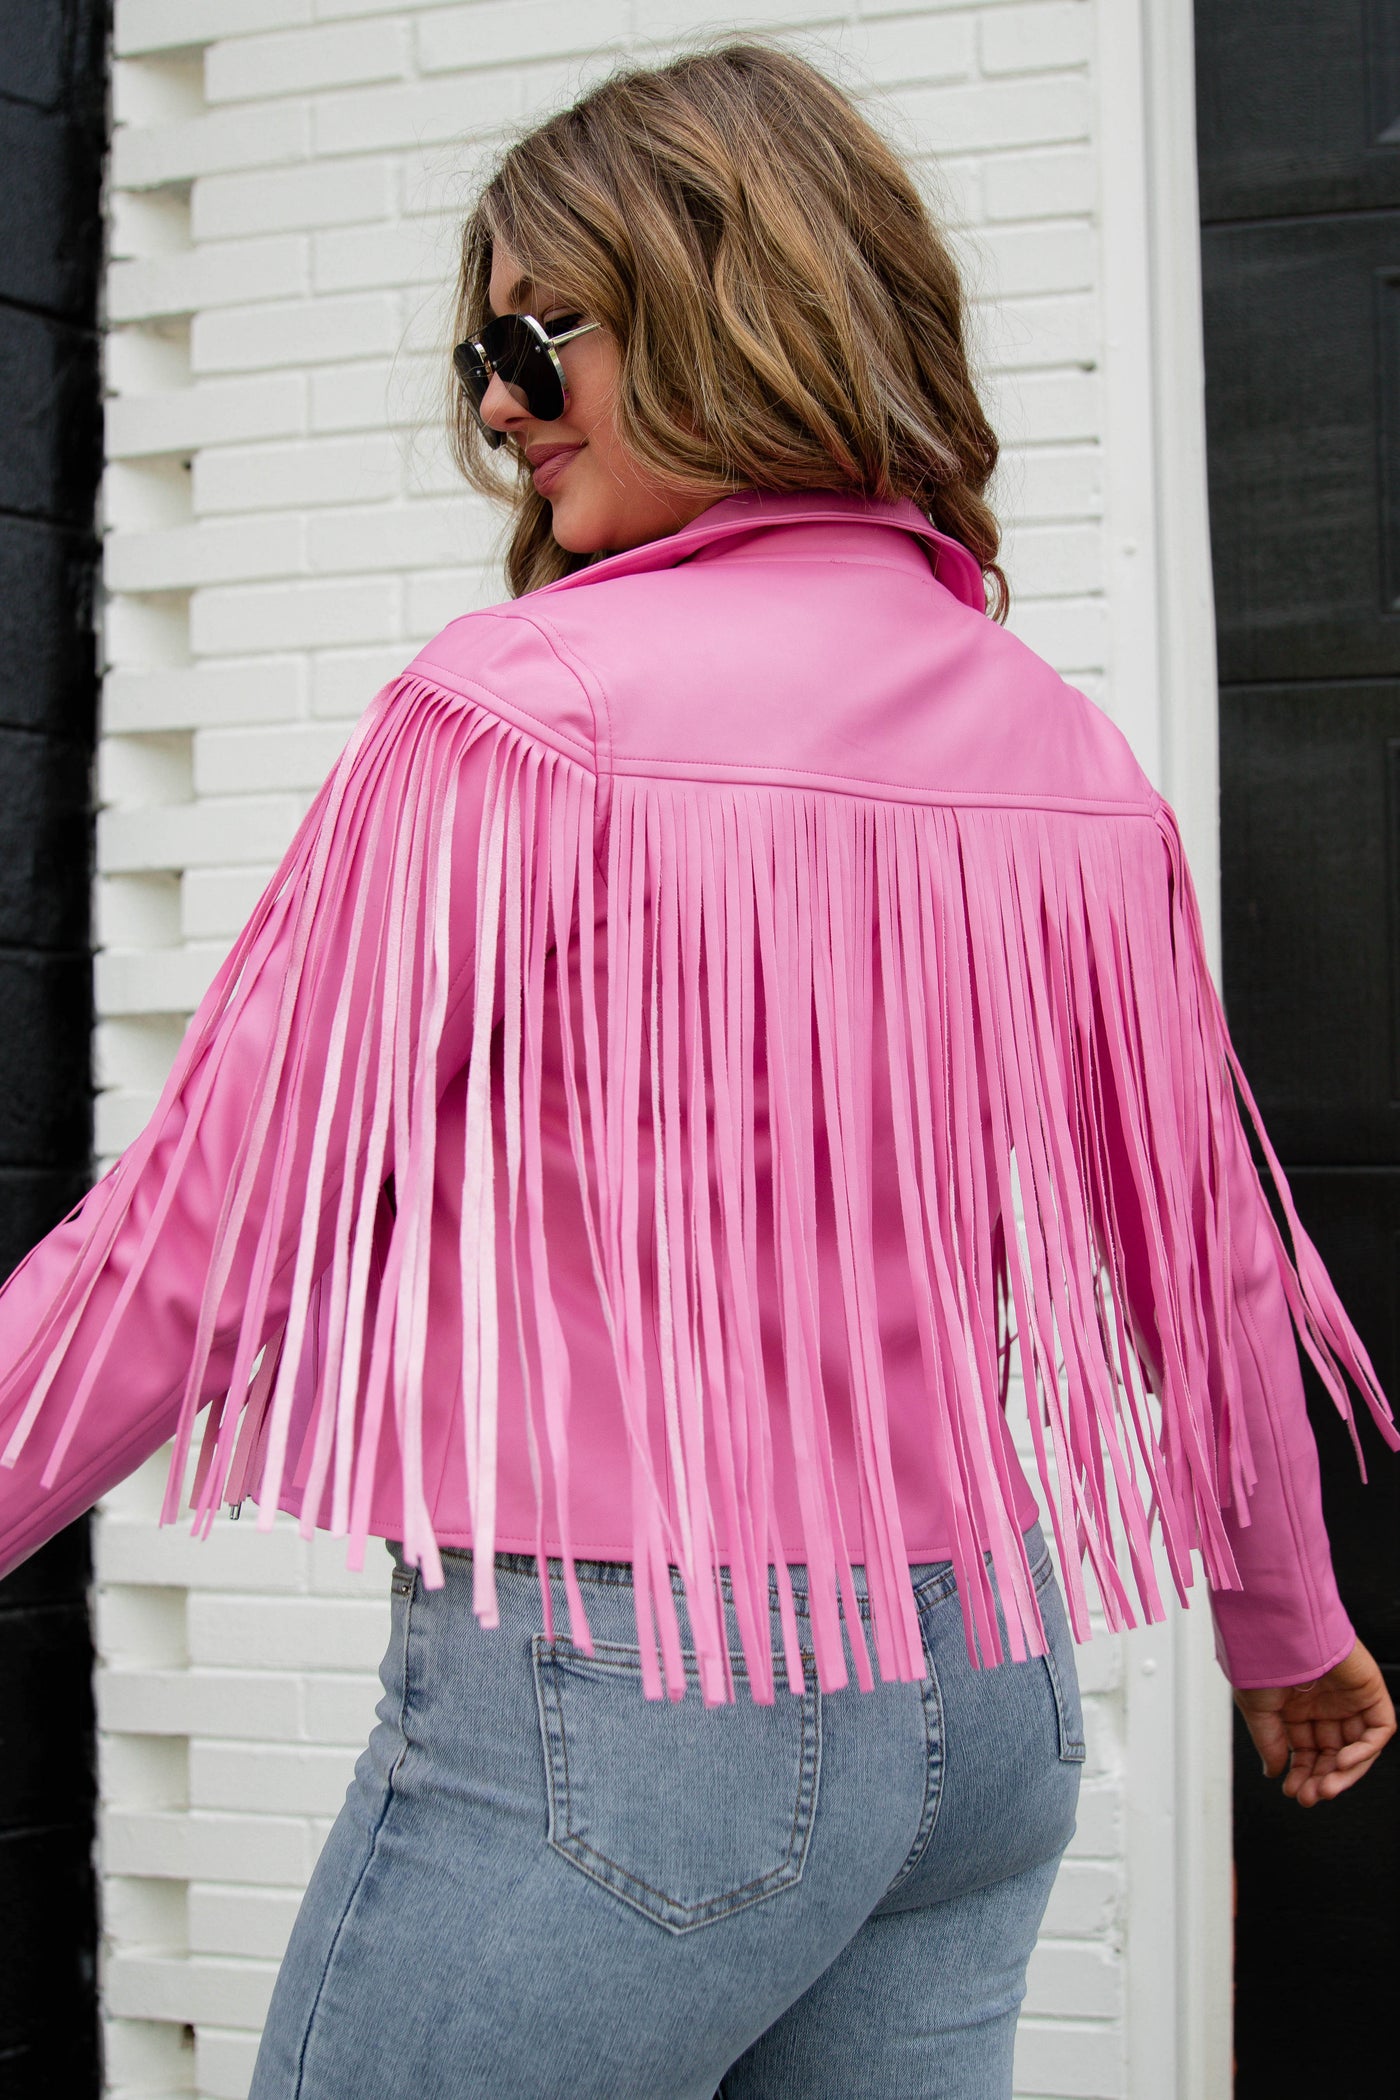 Blue Buttercup Hot Pink Sequin Fringe Jacket Hot Pink / M